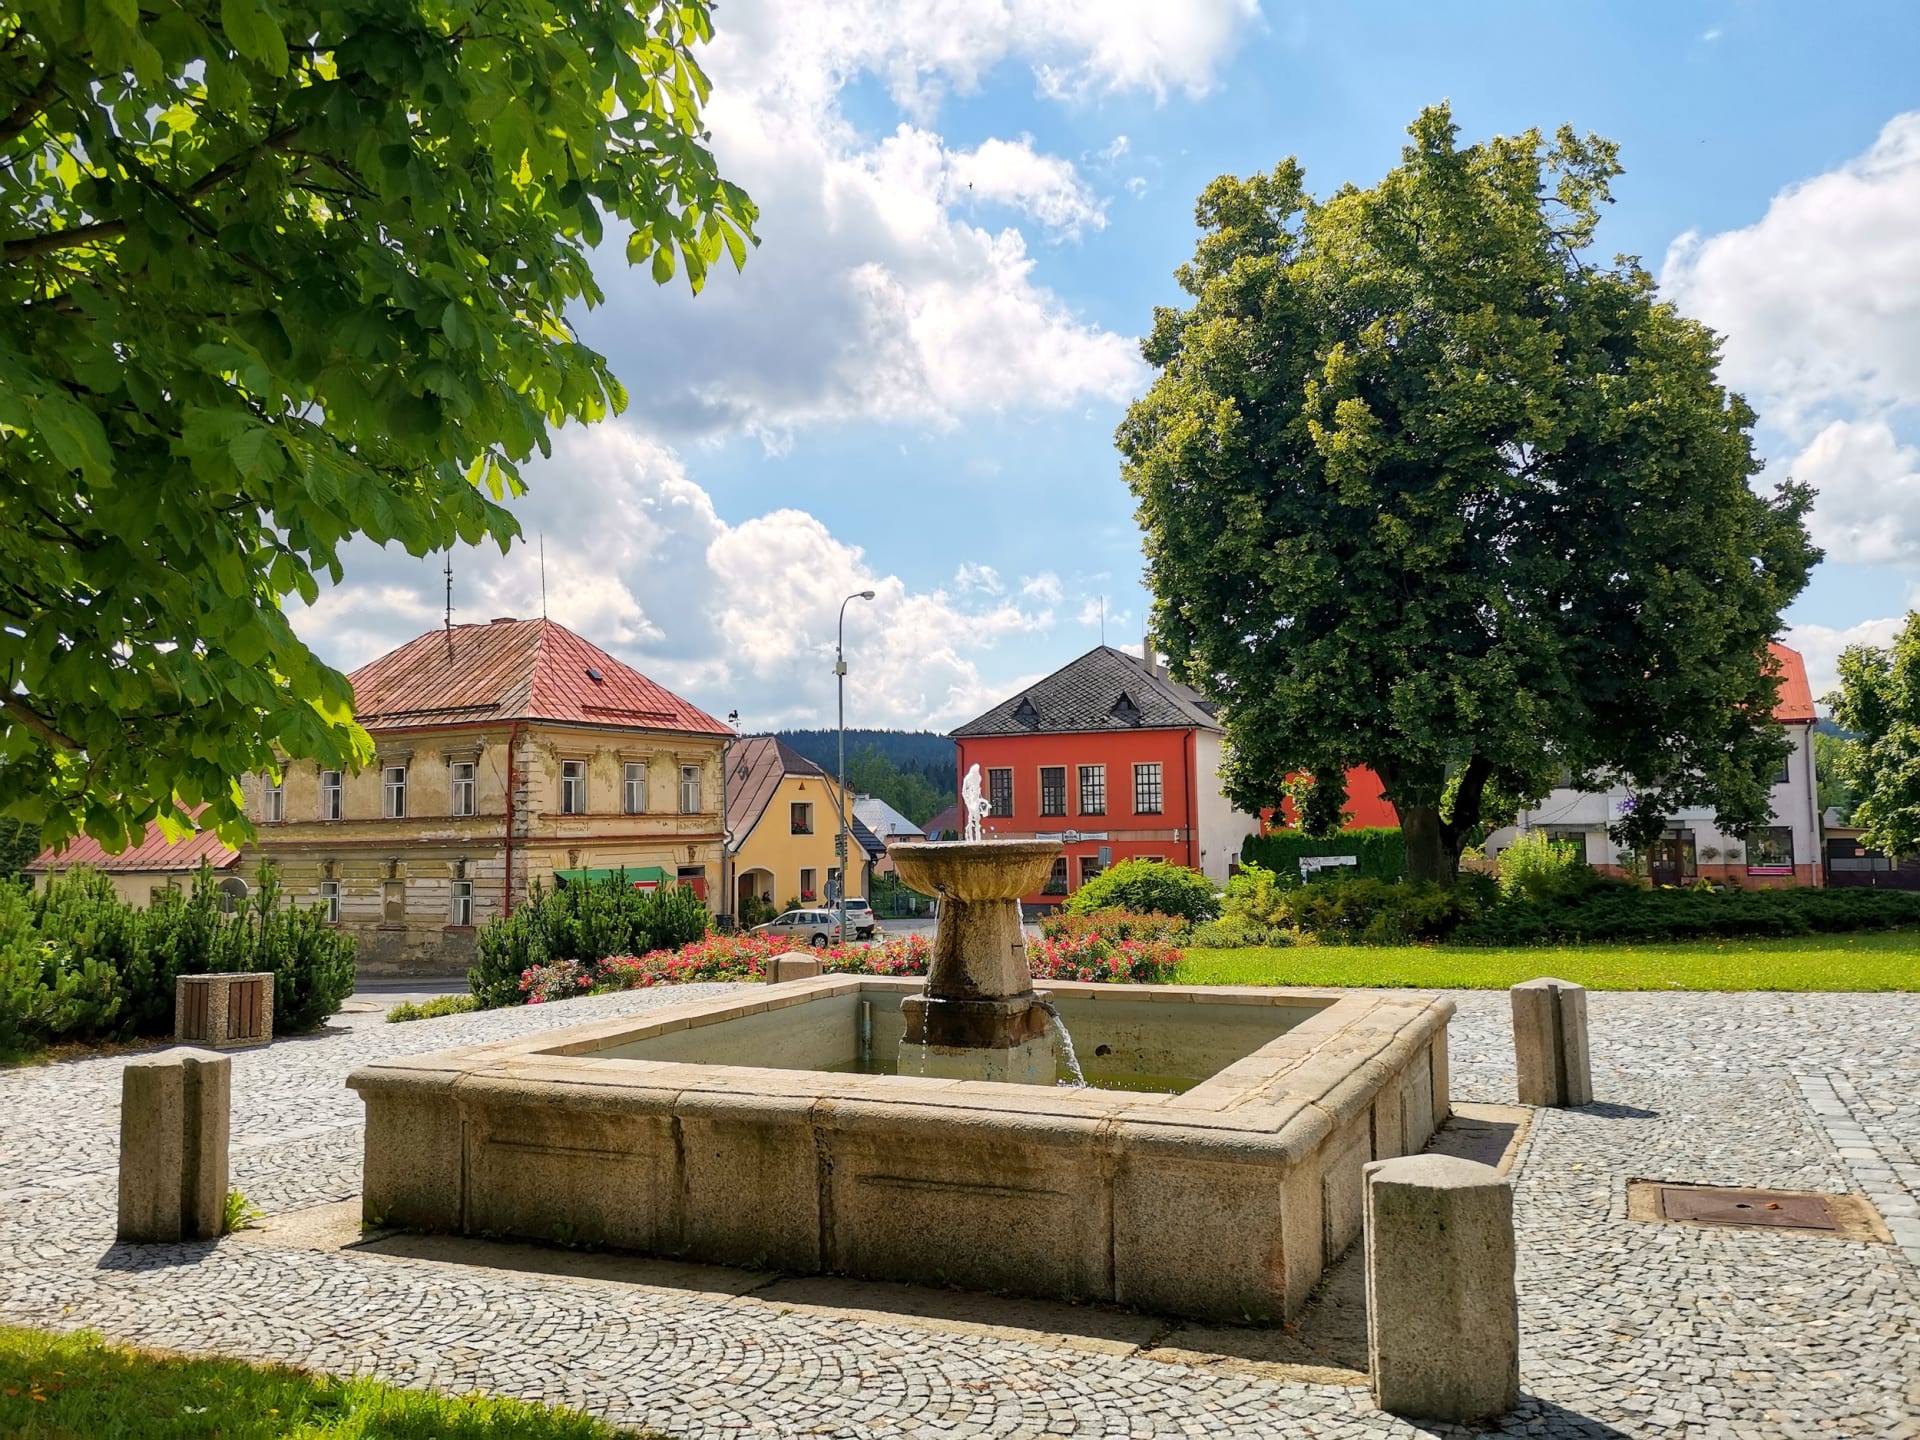 Ve Svratce, kudy prochází historická hranice Čech a Moravy, můžete obdivovat nejen původní architekturu, ale také krásnou přírodu